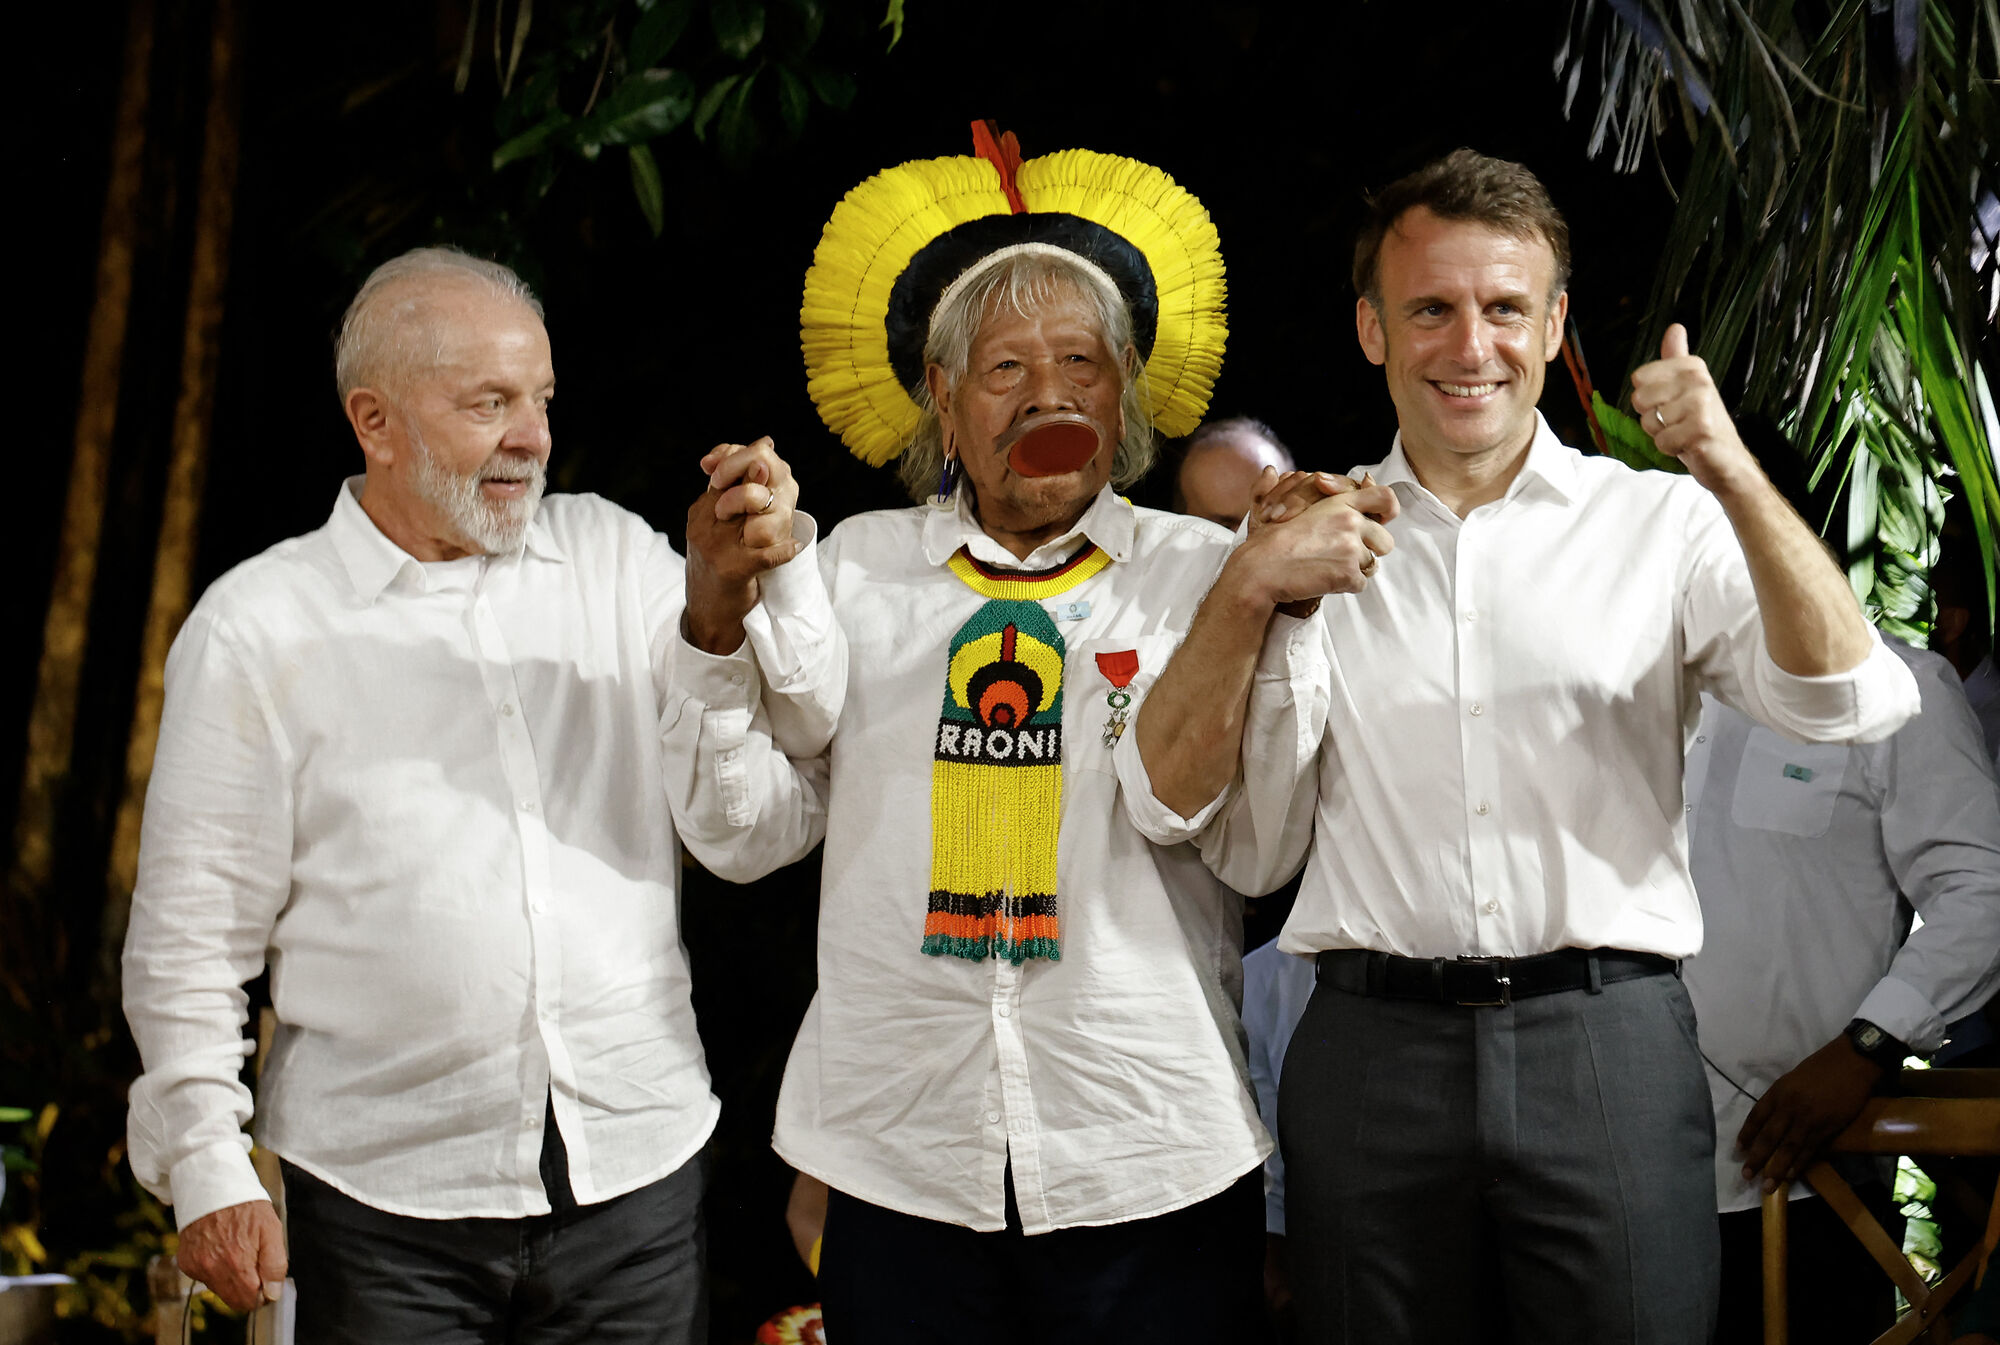 Lula e Macron lançam plano de economia sustentável na Amazônia